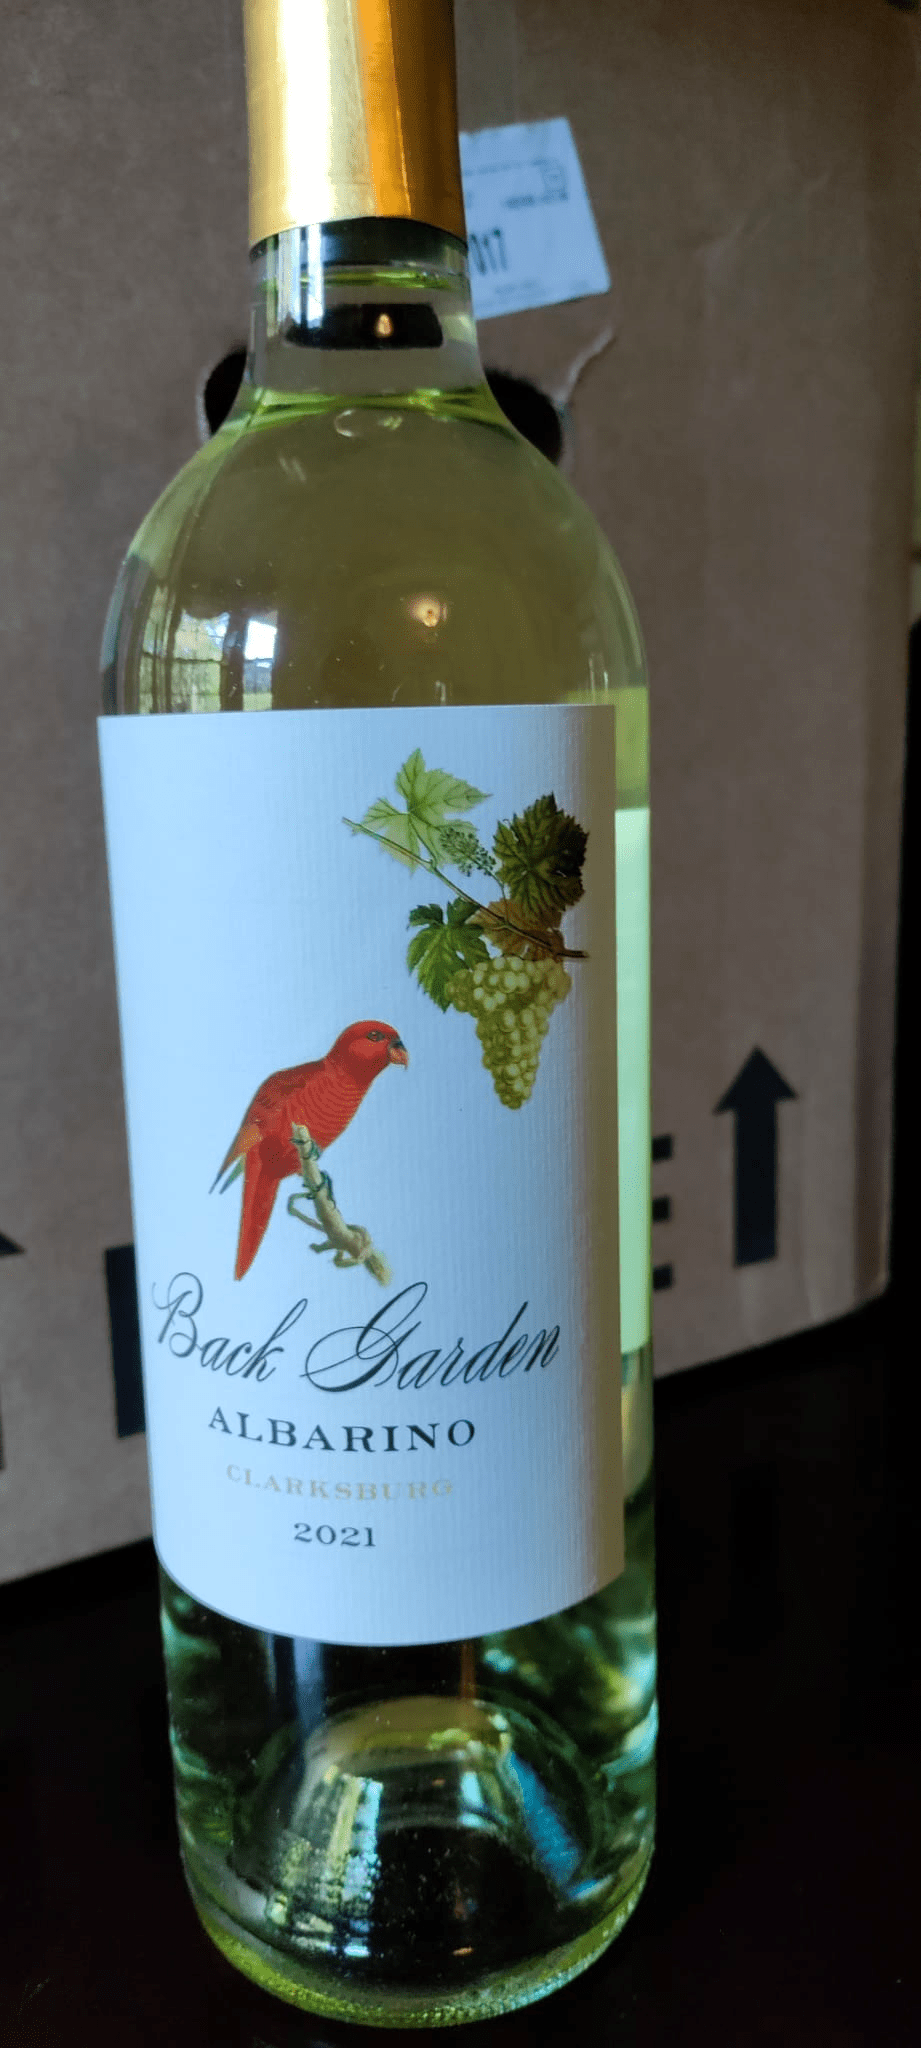 Bottle of Back Garden, Albarino.